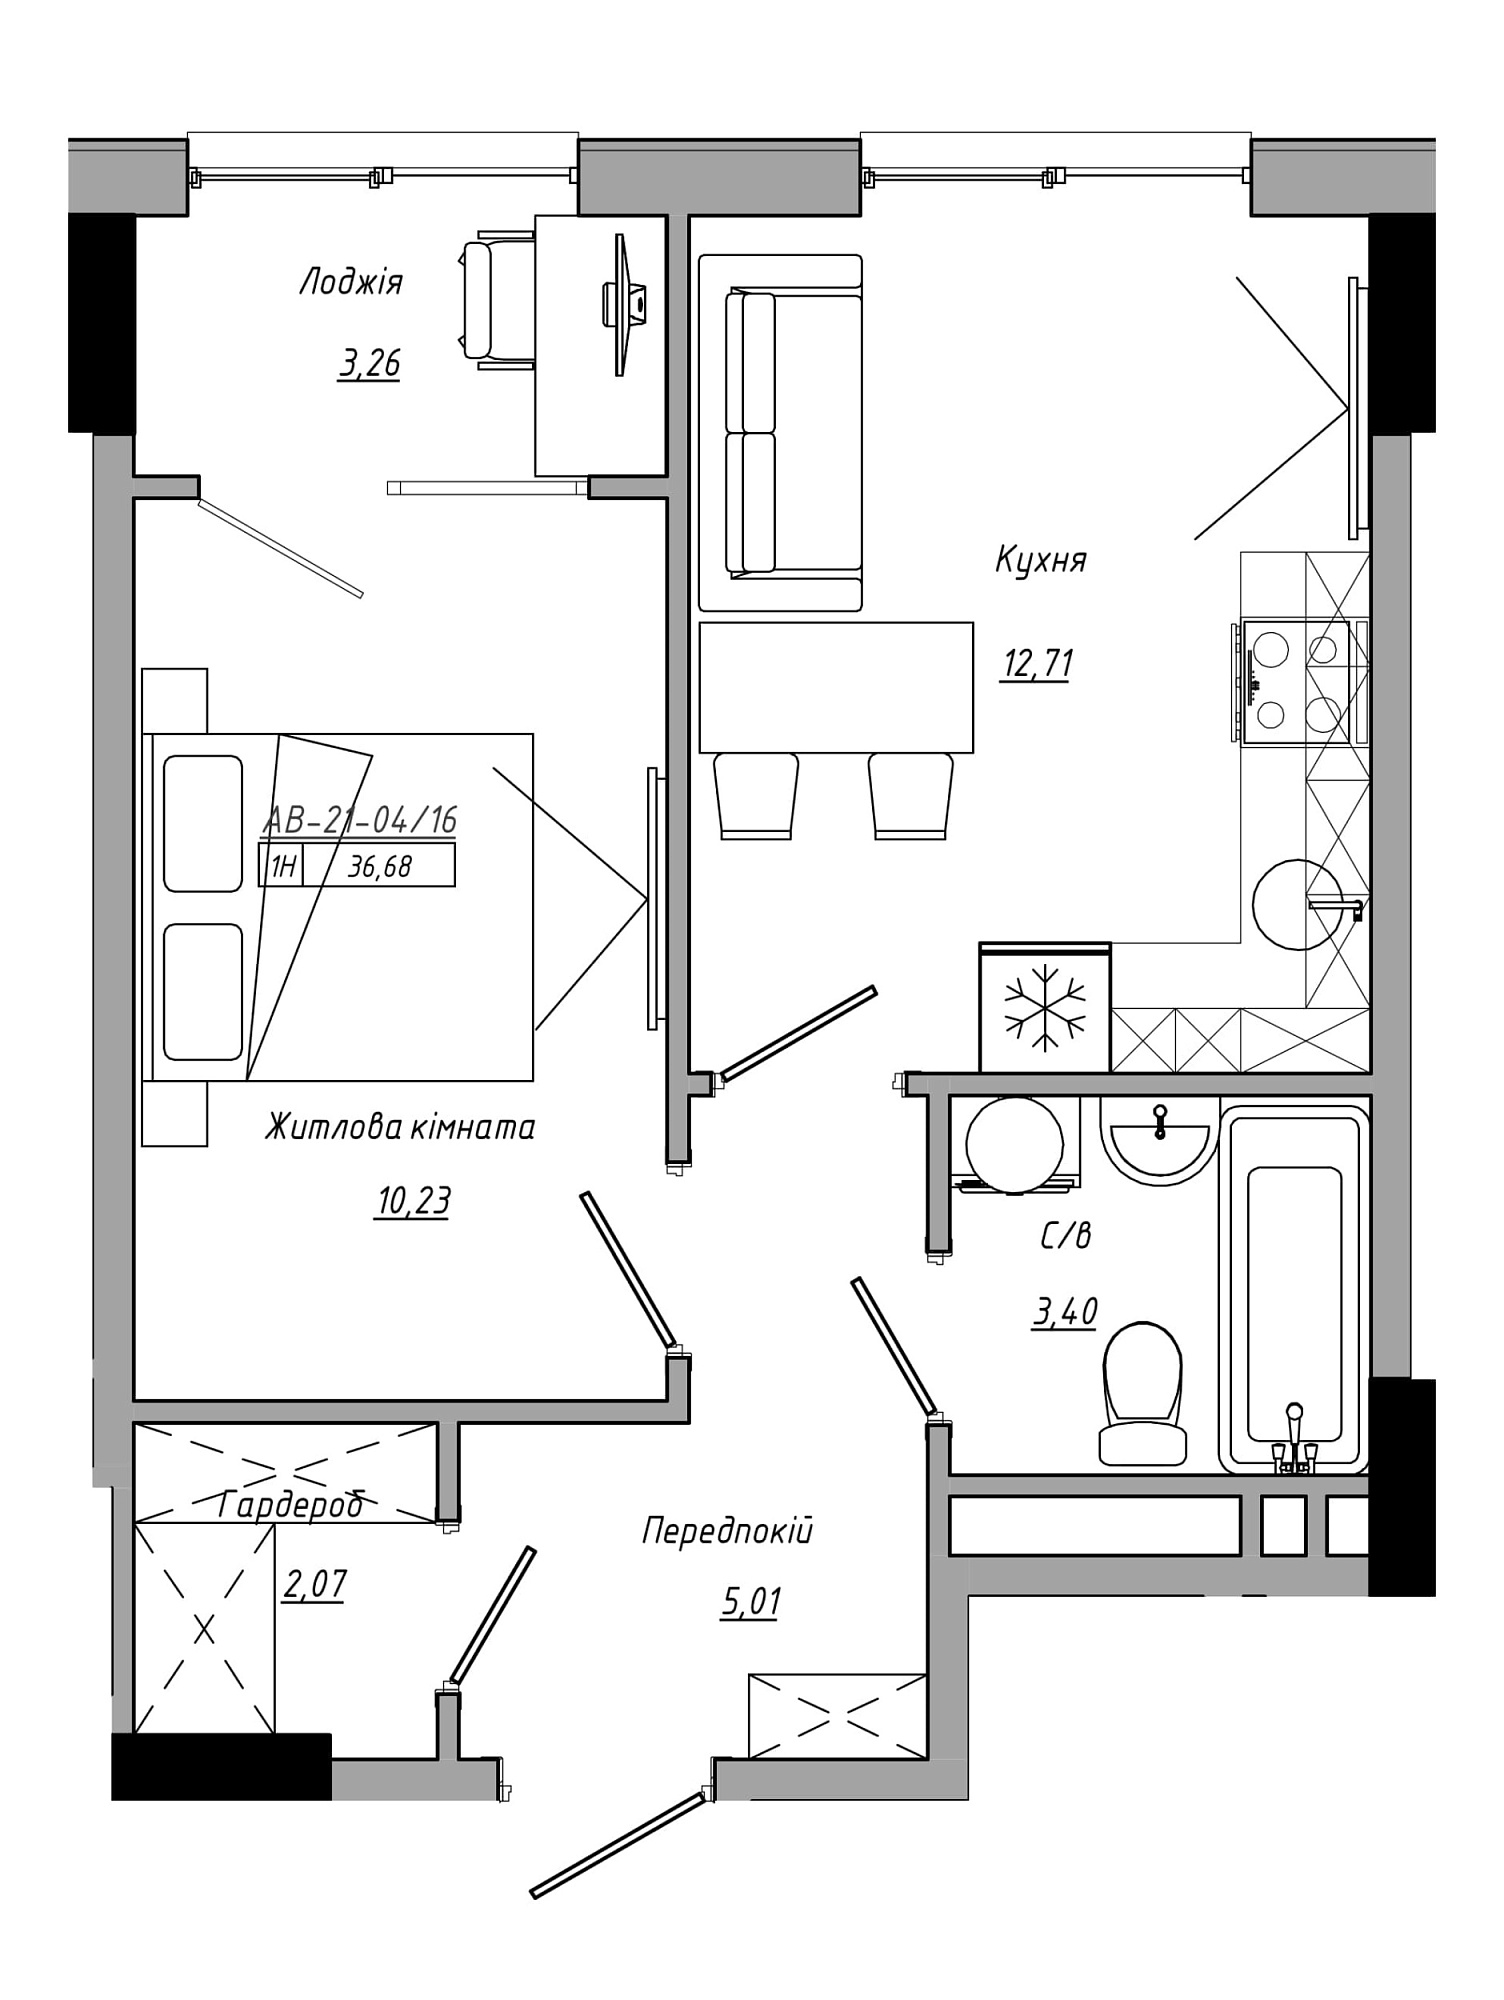 Планування 1-к квартира площею 36.68м2, AB-21-04/00016.